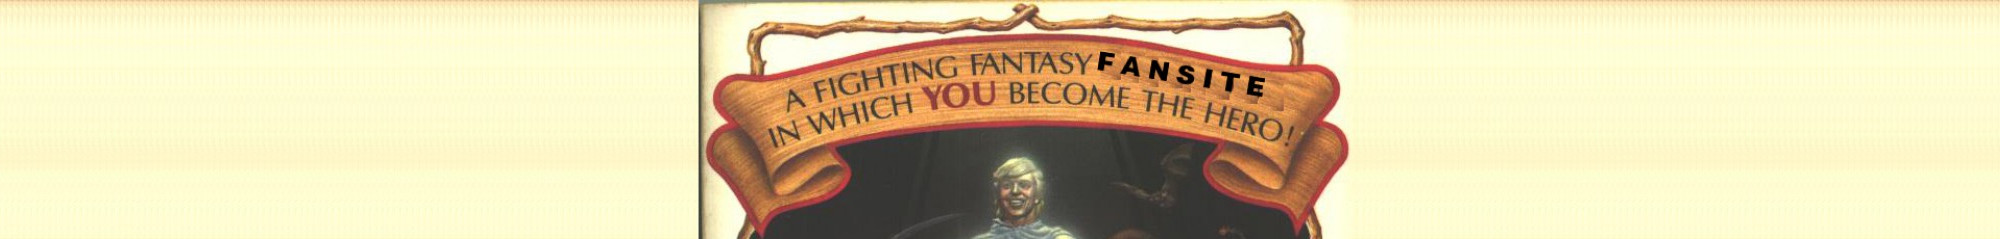 Fighting Fantasy Fan